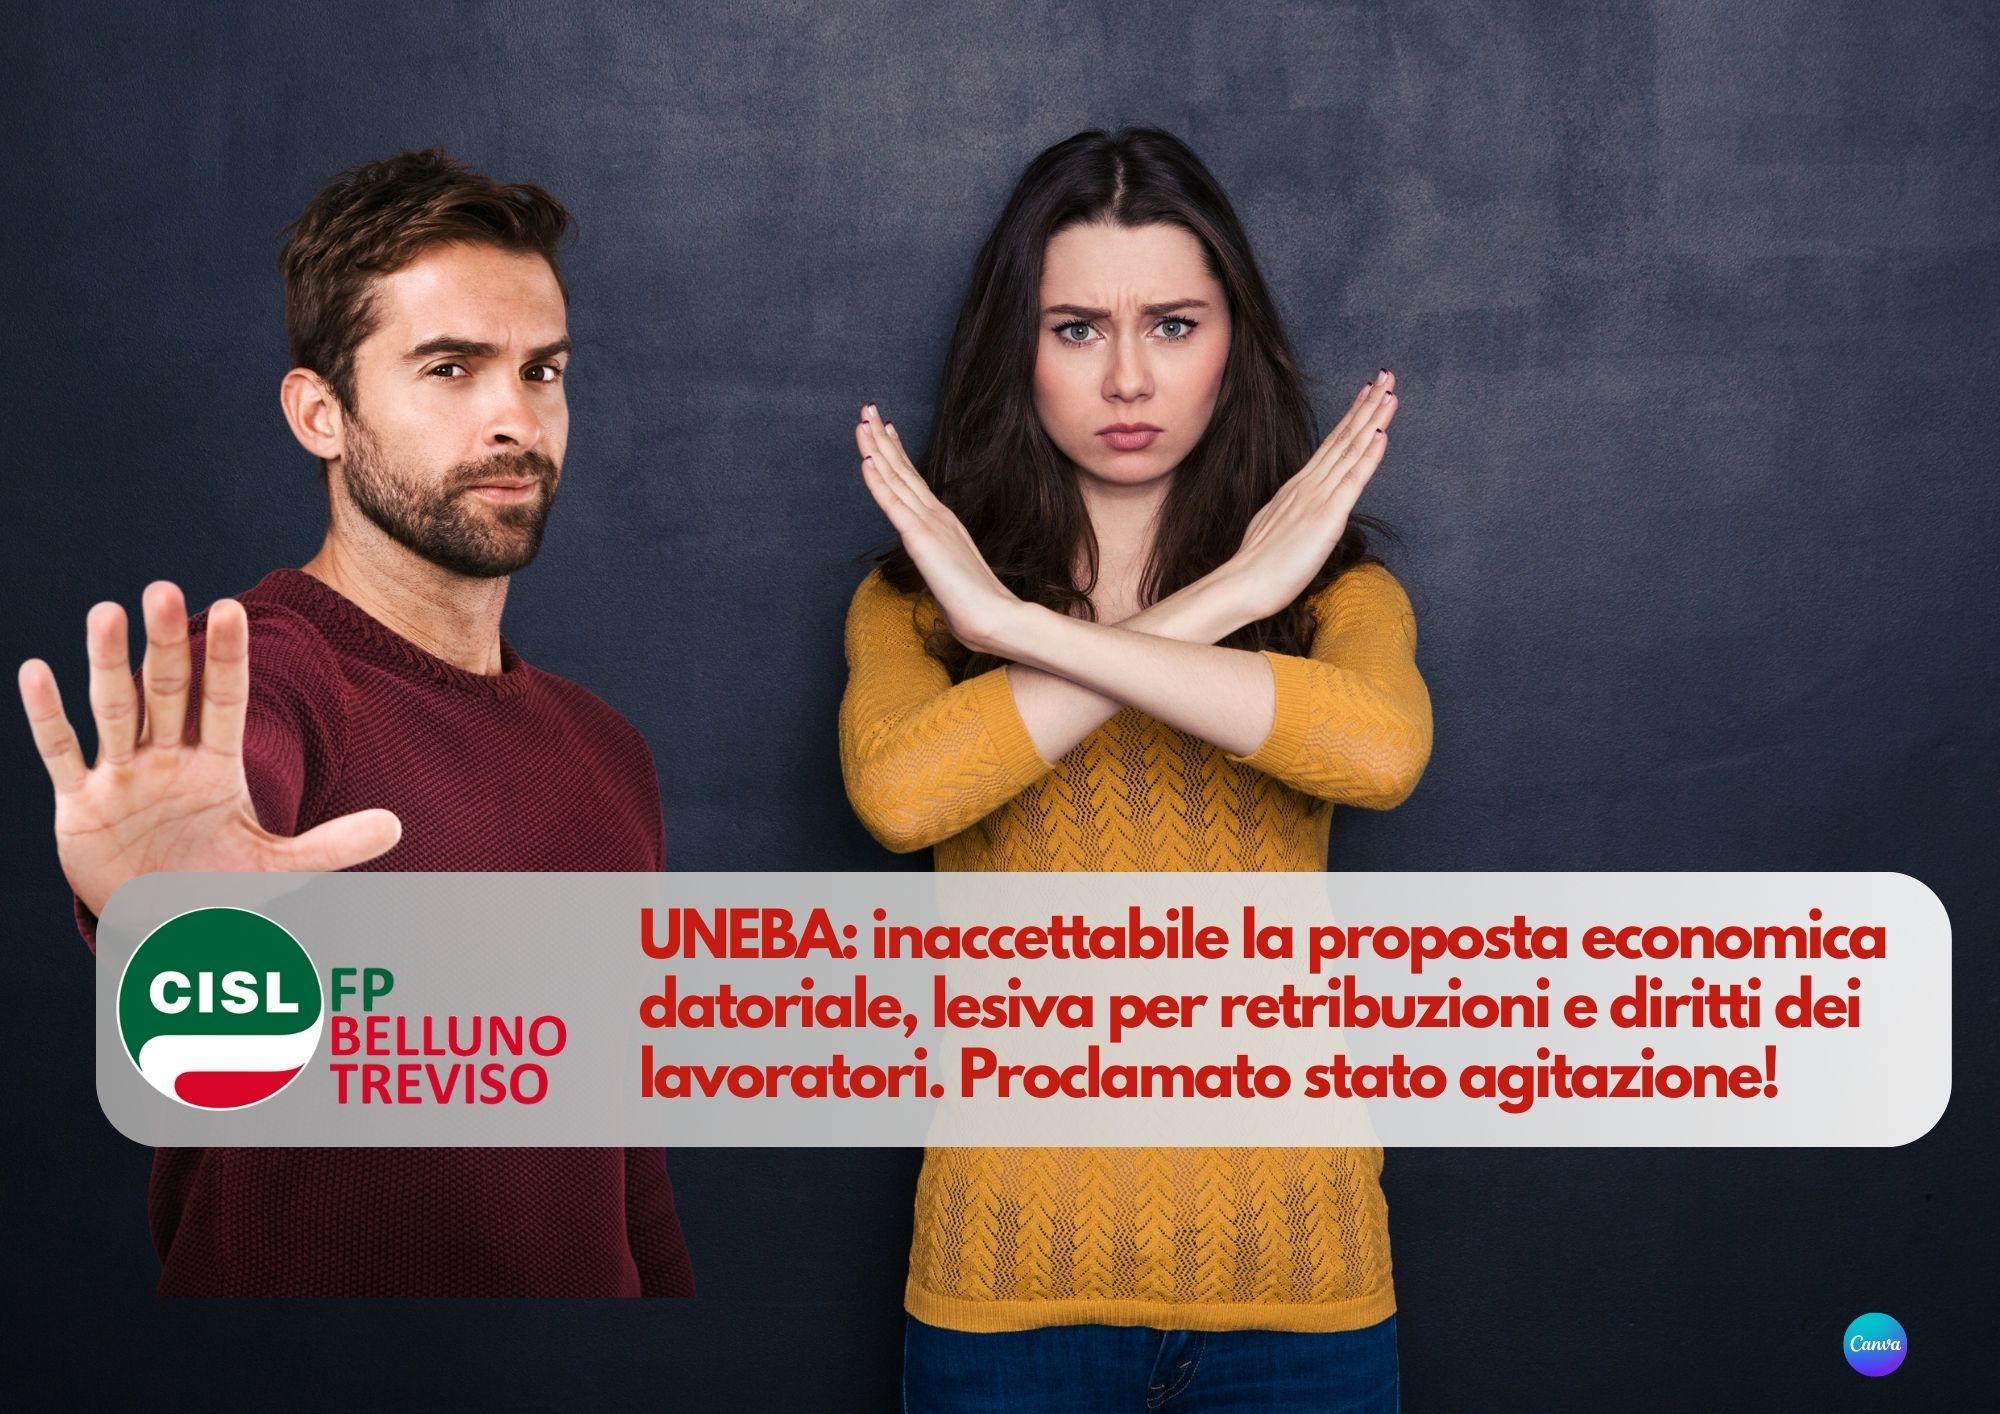 CISL FP Belluno Treviso. UNEBA inaccettabile la proposta economica datoriale. Proclamato stato agitazione